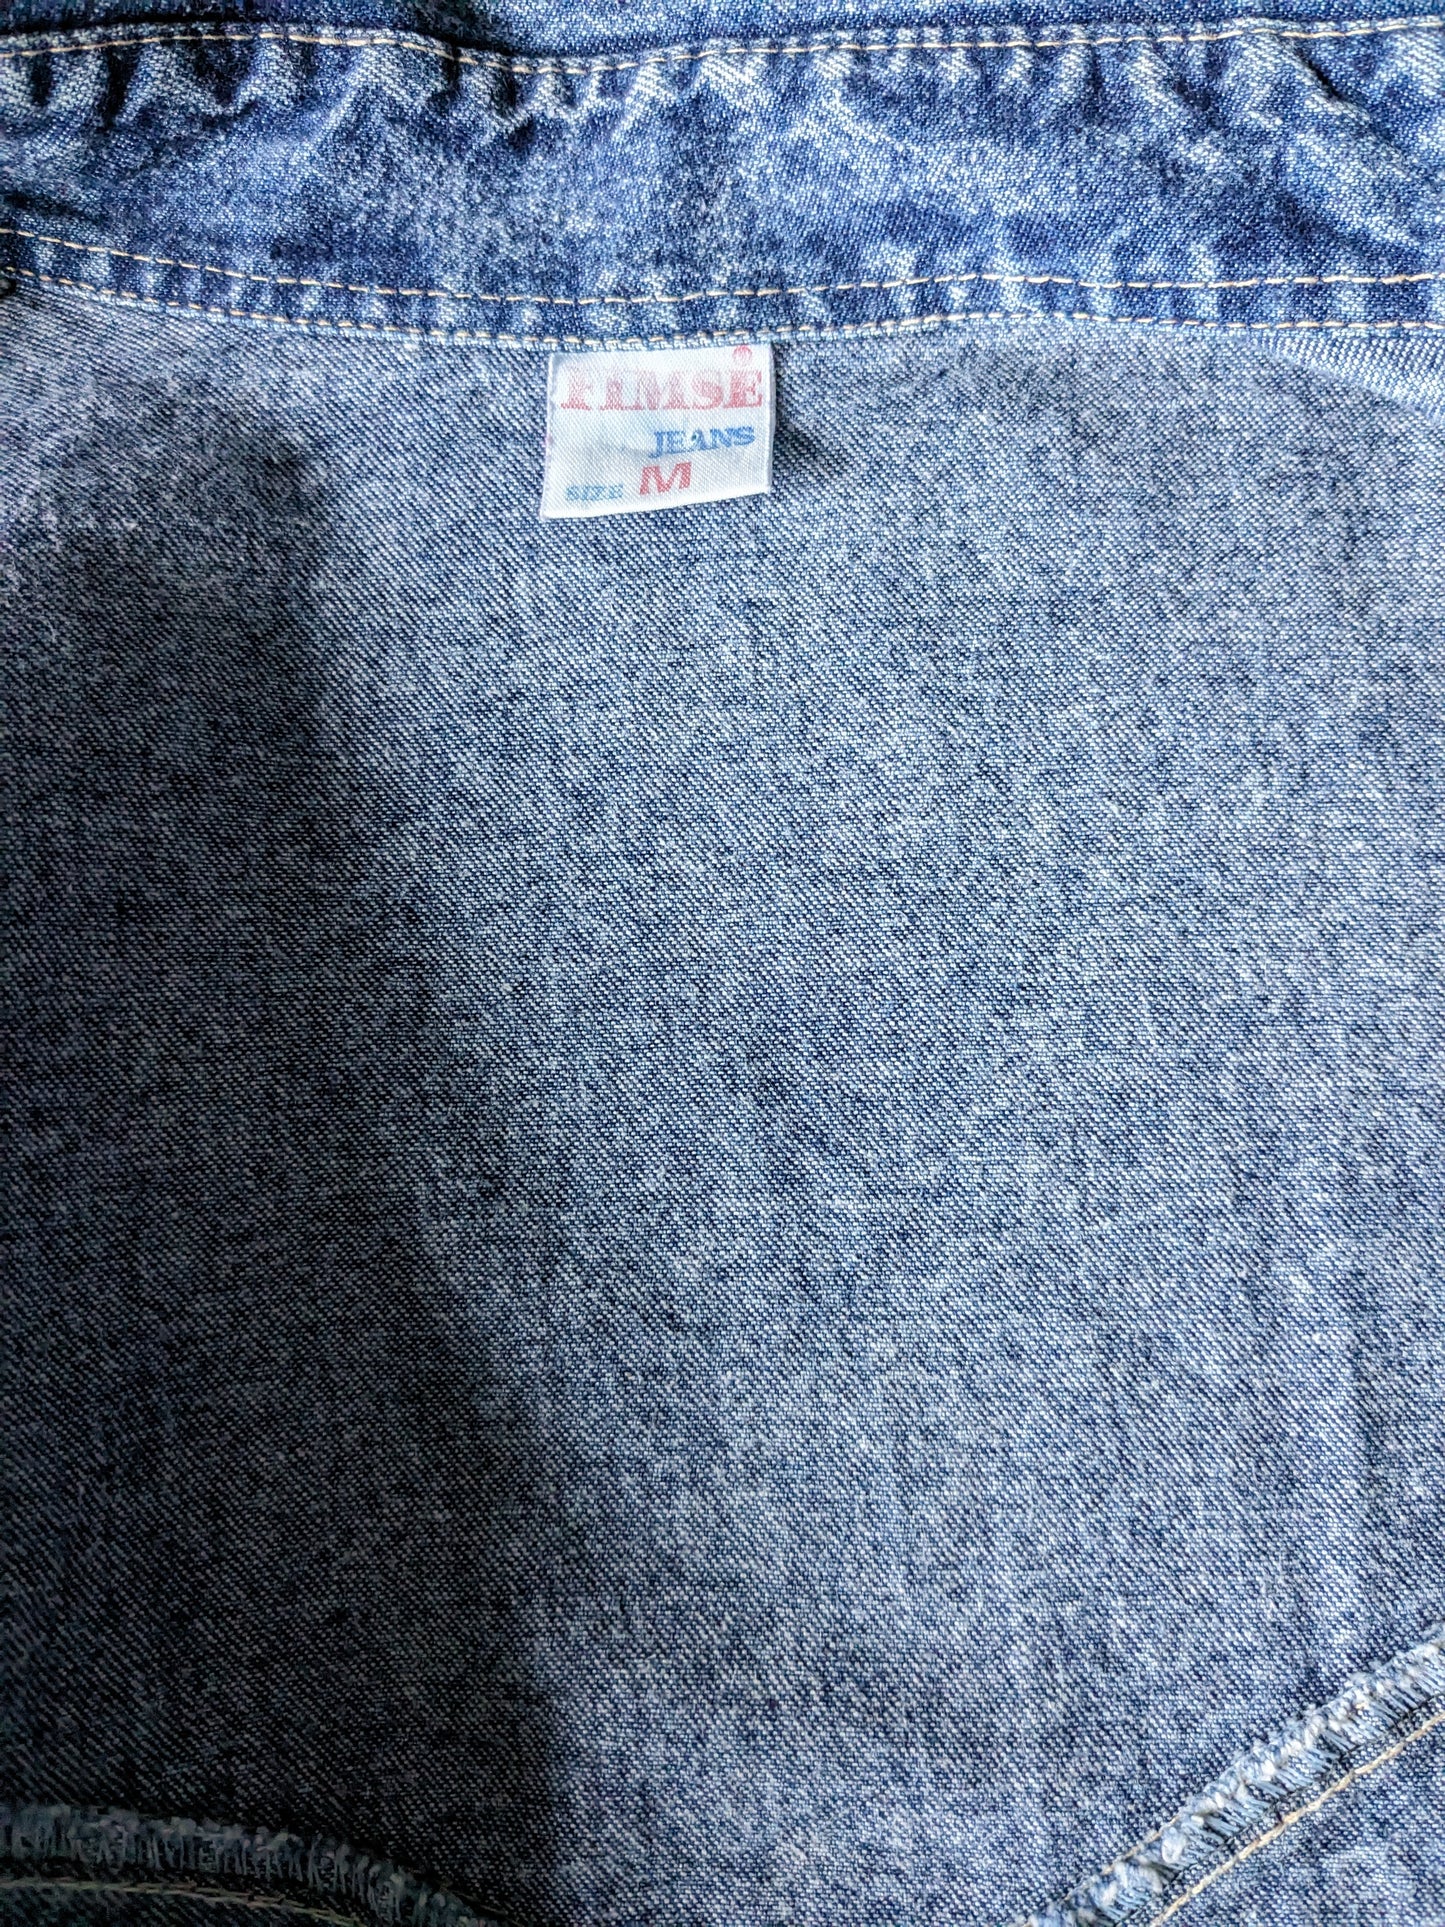 FIMTAGE FIMSE Jeans Shirt Tissu plus épais. Bleu mélangé. Taille L.